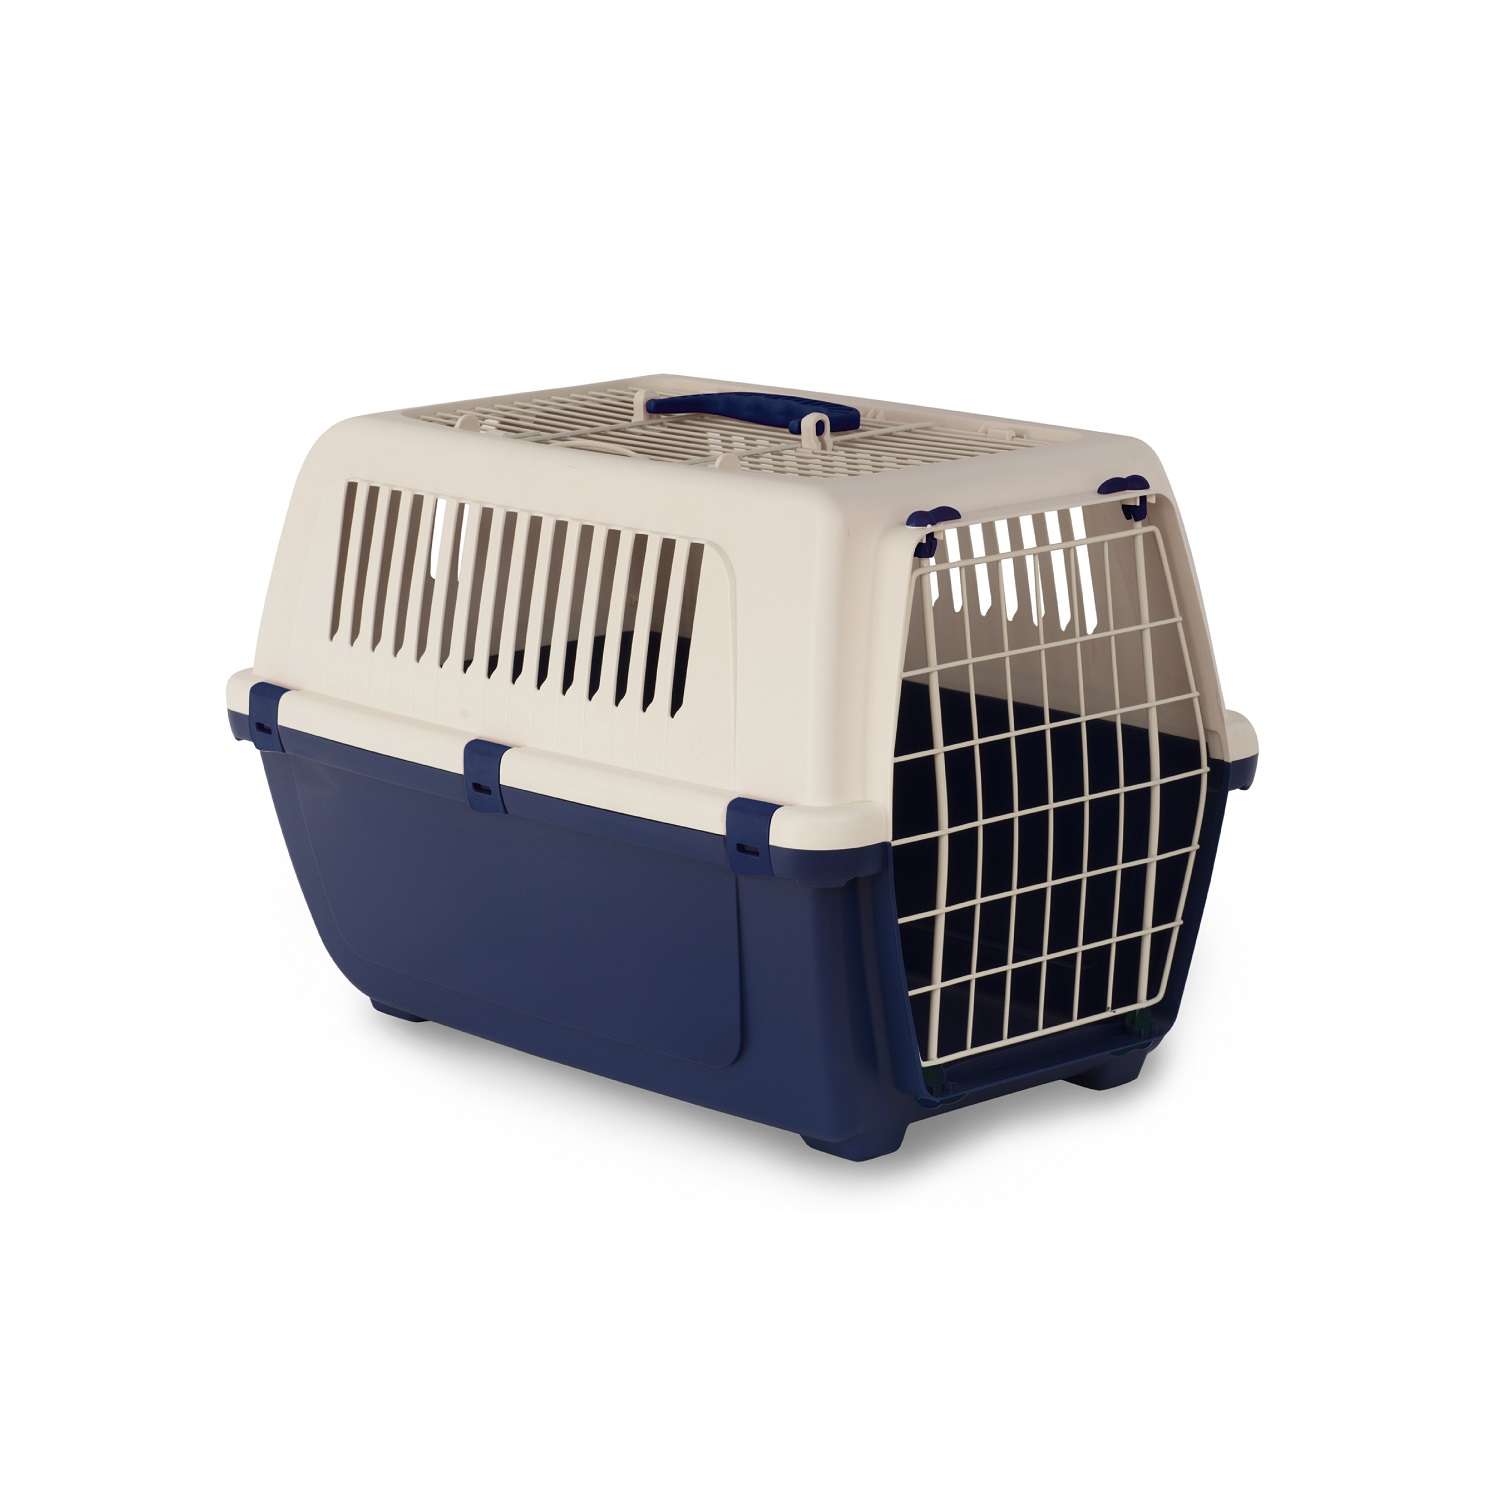 Переноска для животных ХL Lilli Pet контейнер для собак мелких и средних пород транспортный бокс перевозка 59*39*41 см т-синяя - фото 1